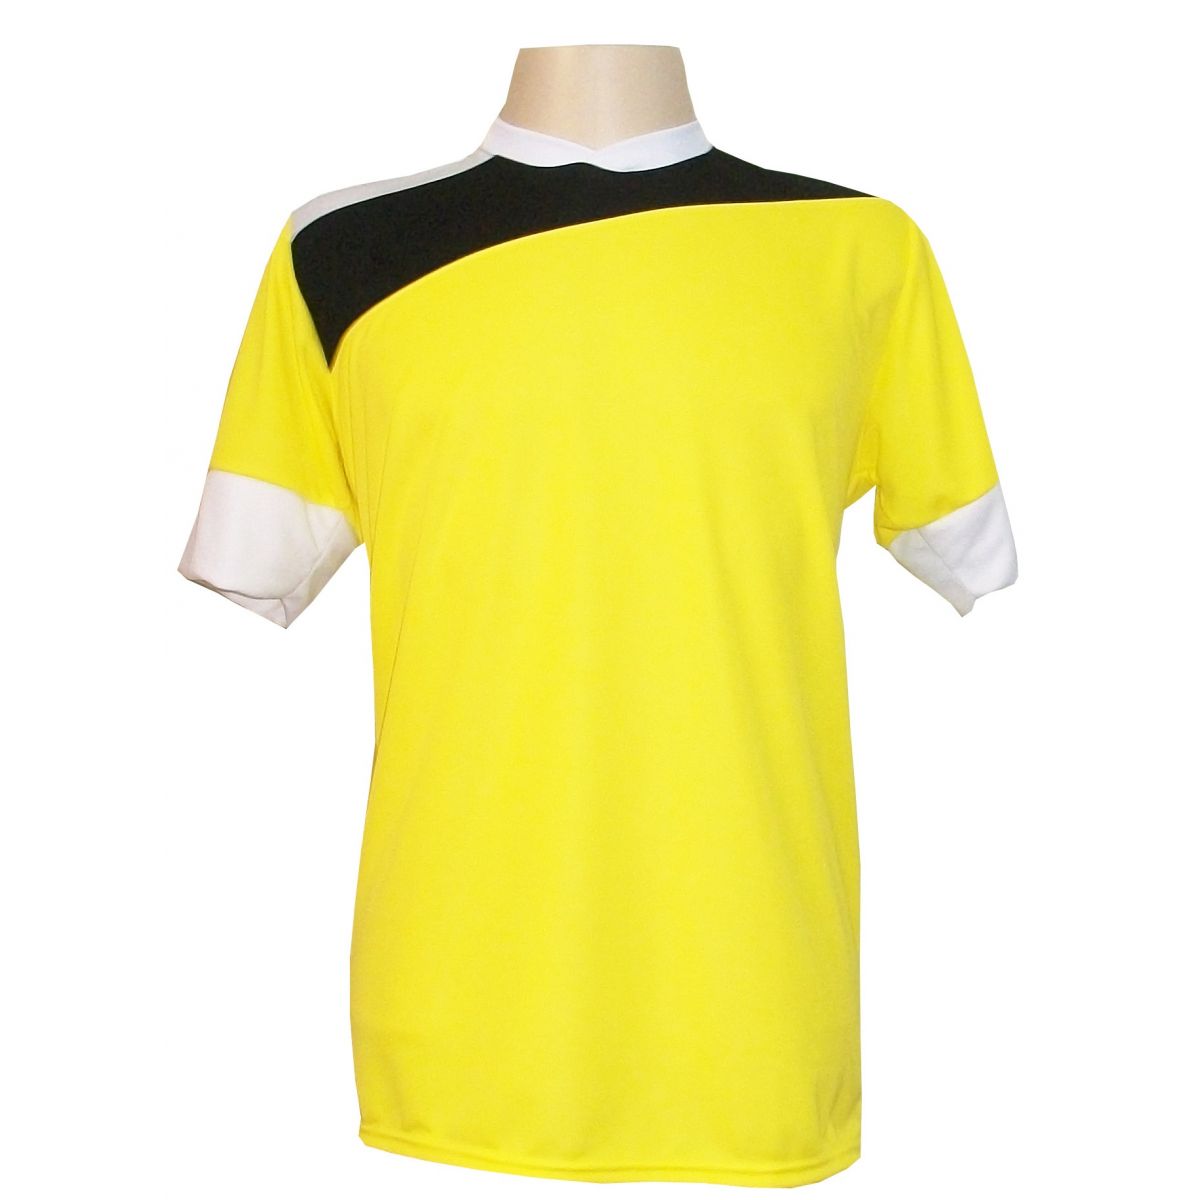 Uniforme Esportivo com 14 camisas modelo Sporting Amarelo/Preto/Branco + 14 calções modelo Madrid Branco + Brindes